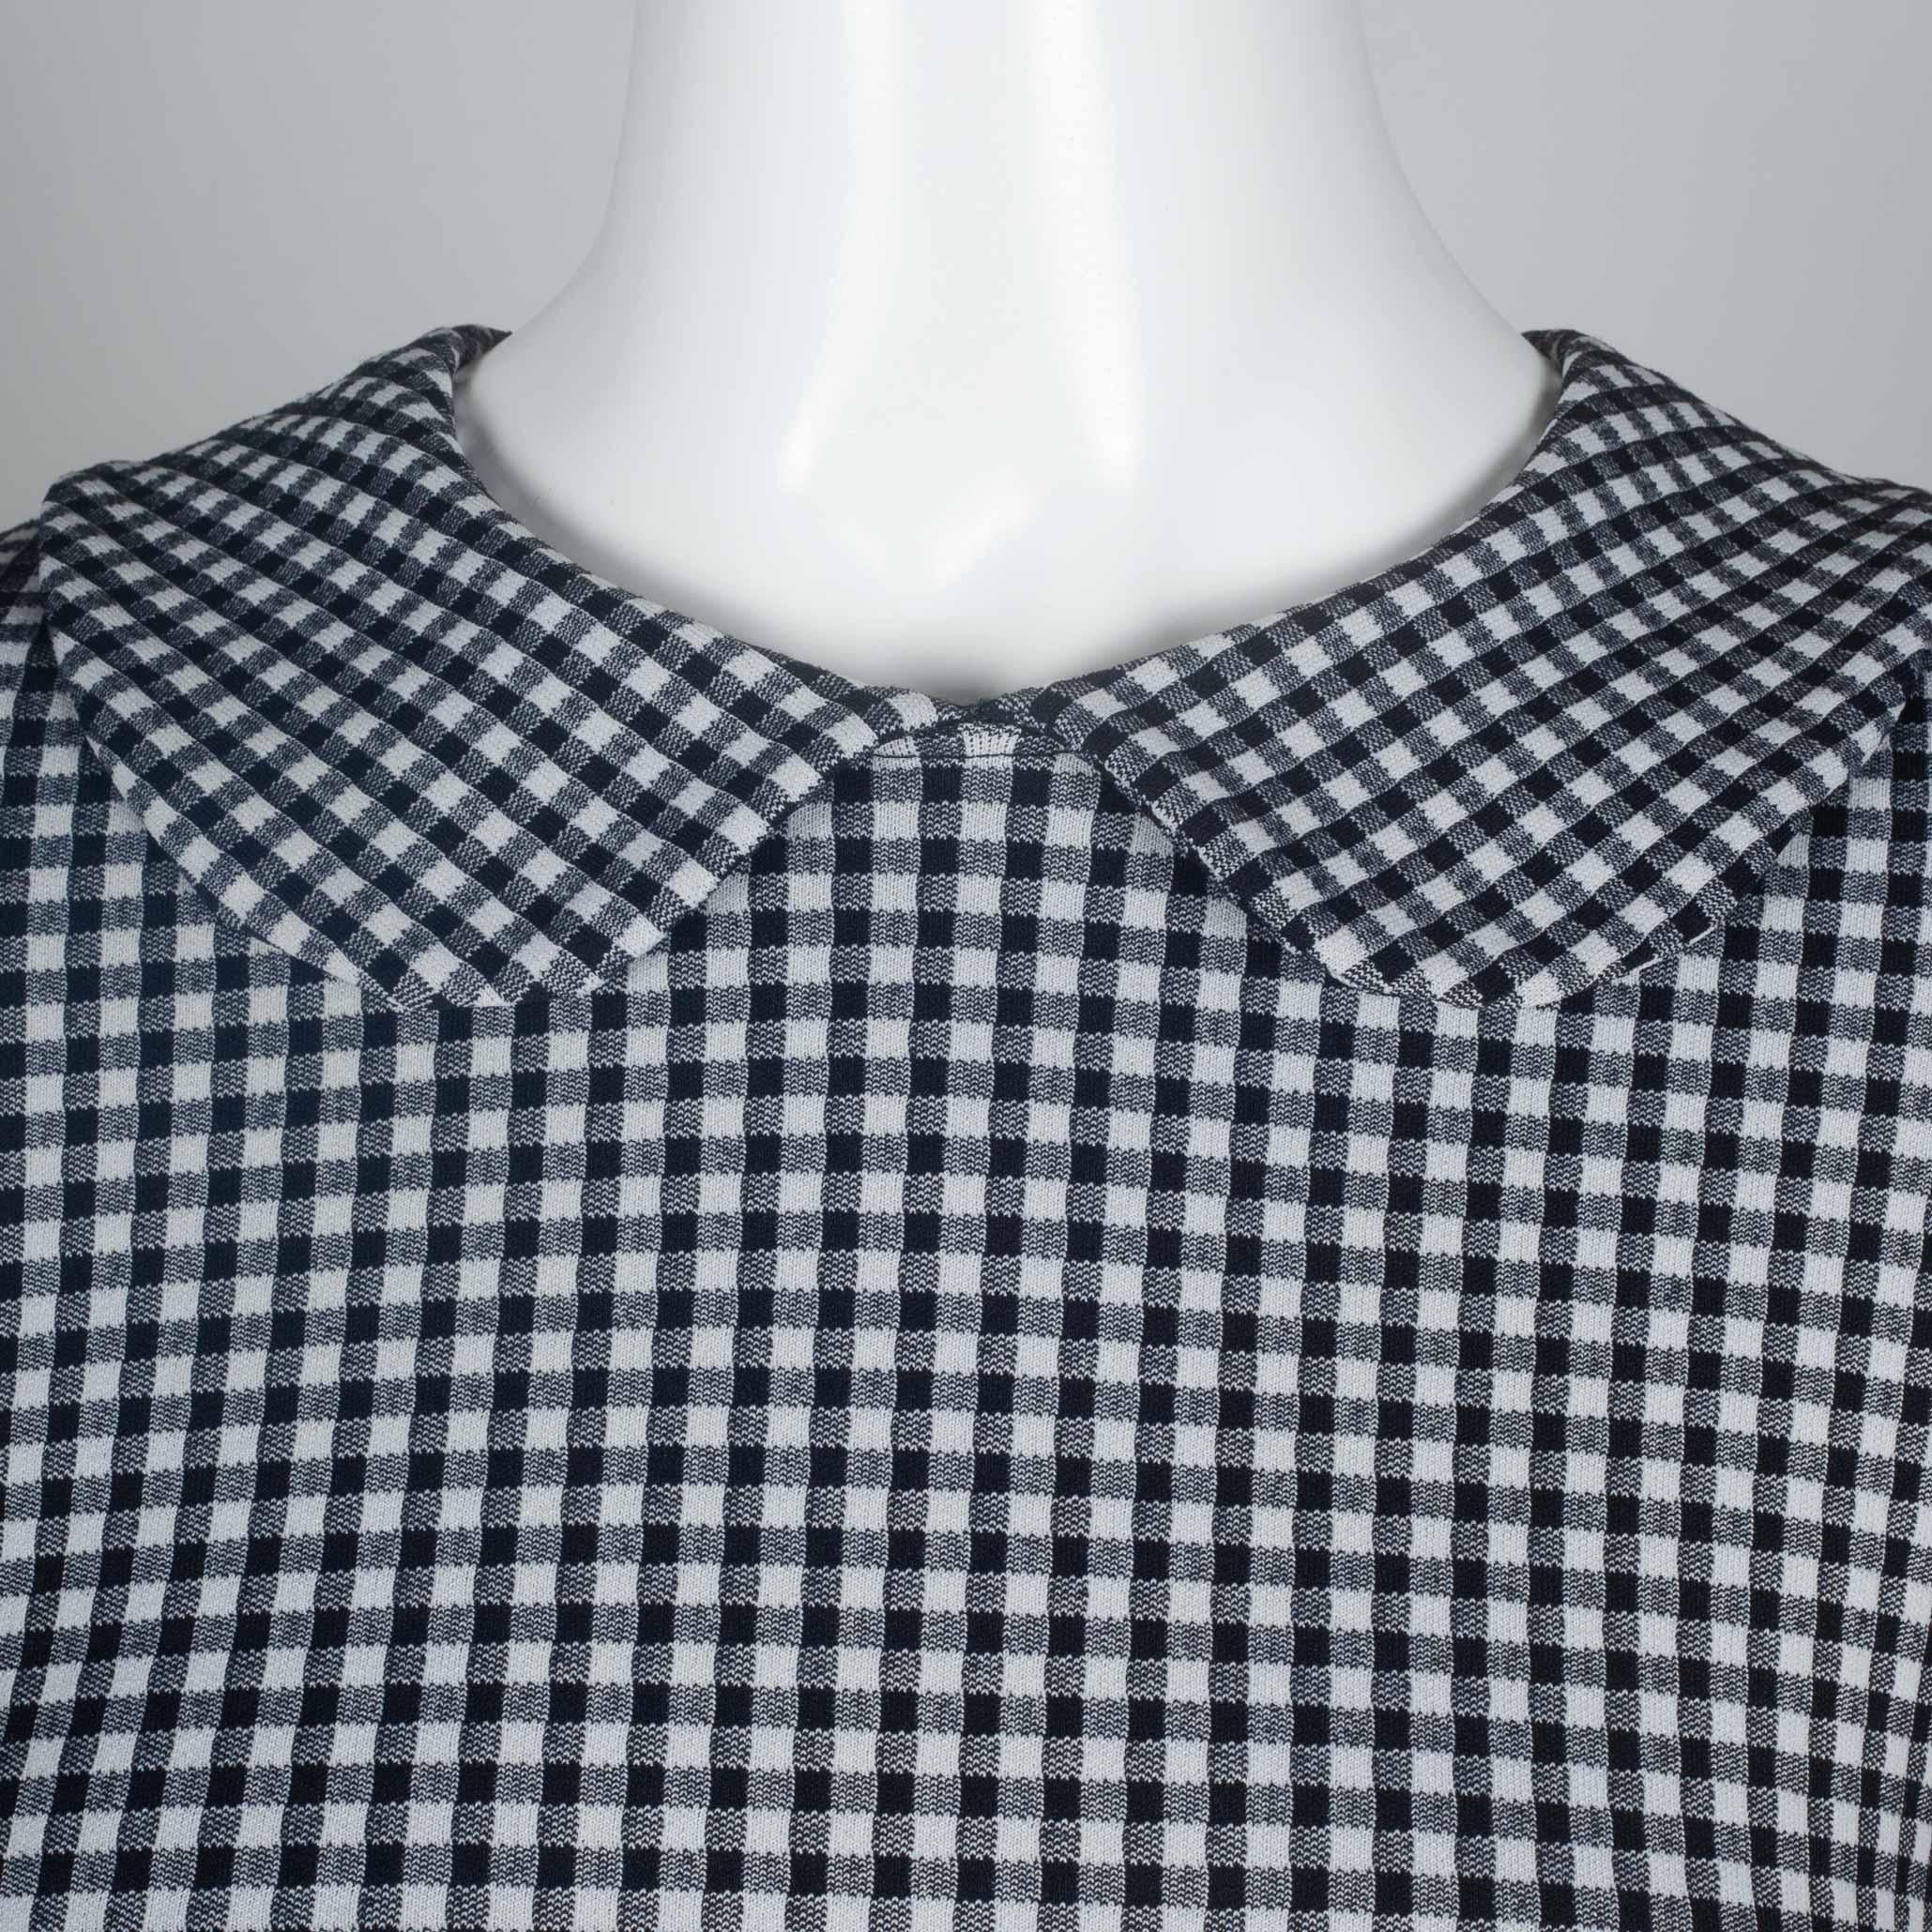  Comme des Garçons Checkered T-Shirt with Collar, 1996 3